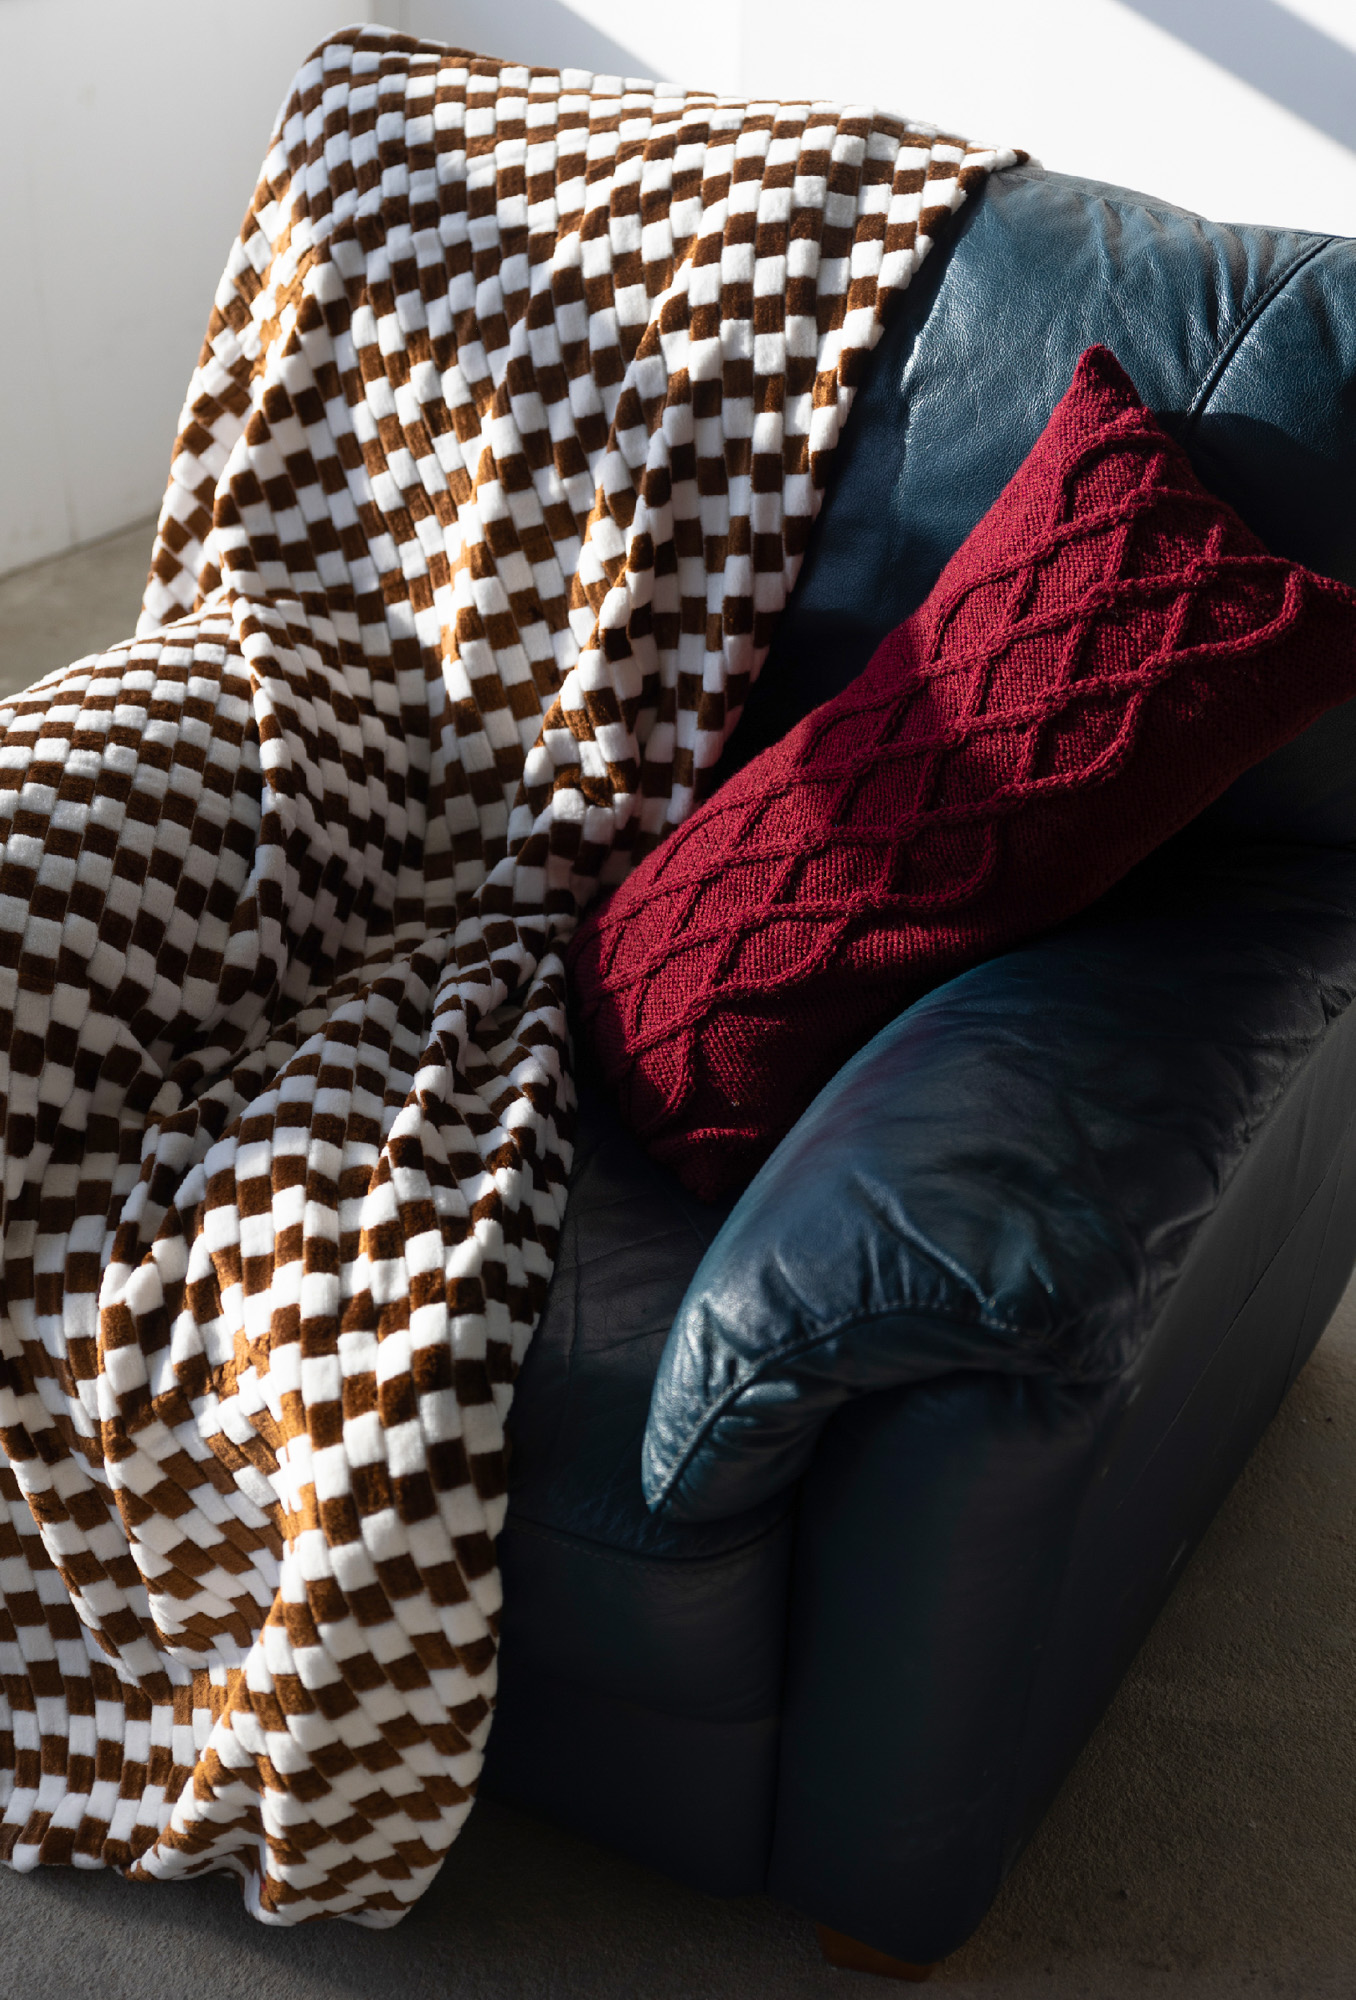 MONNARI Woman's Blanket 171327550 /Check Pattern